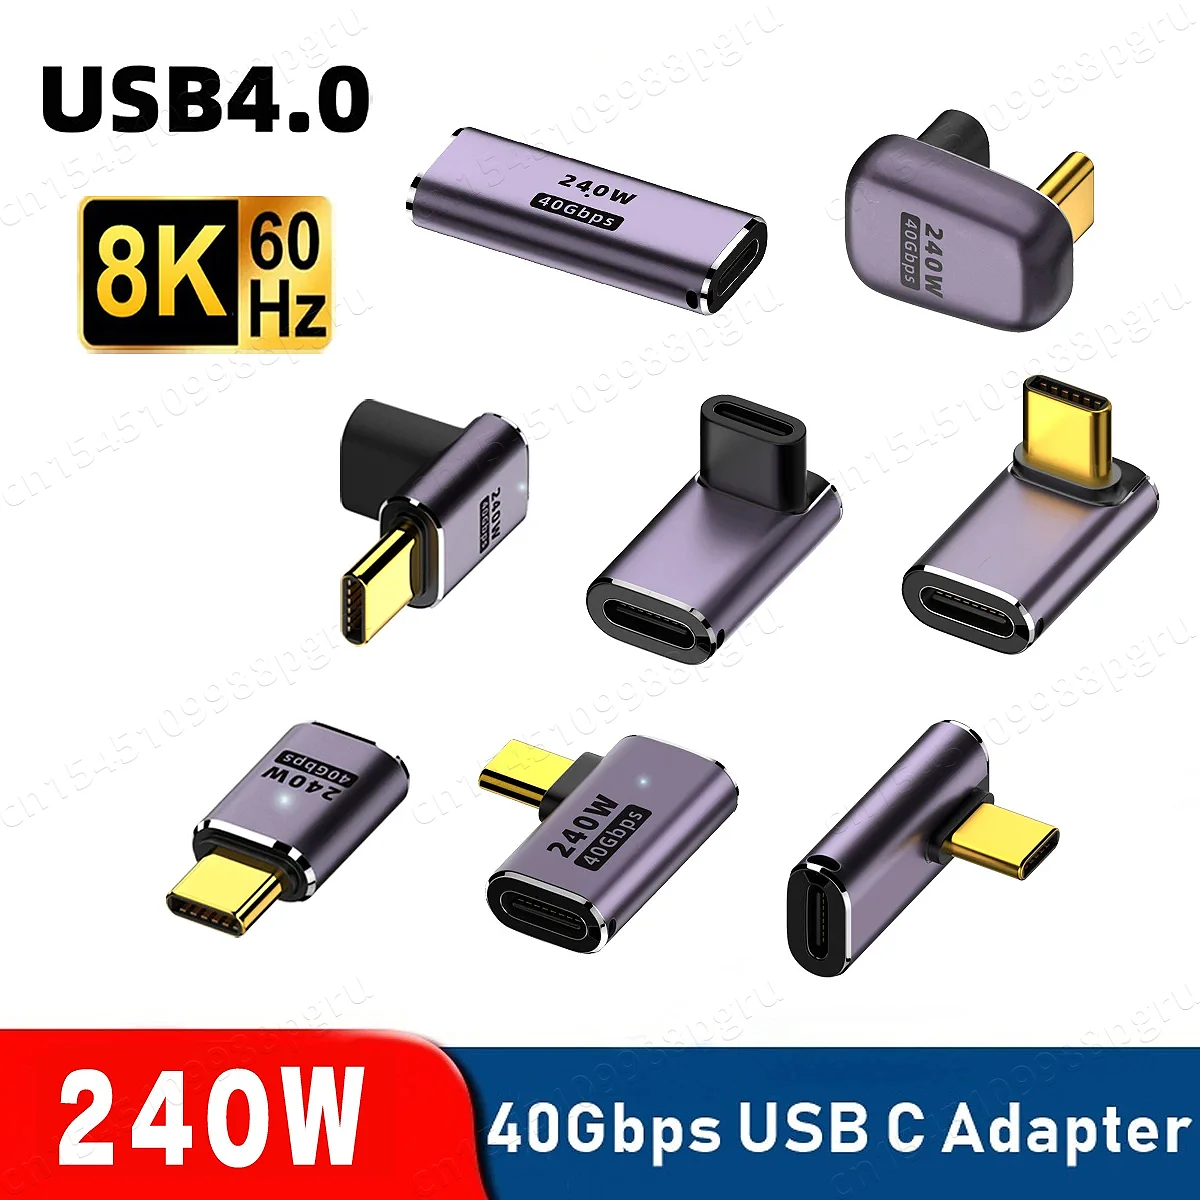 PC º     , PD 240W, USB4.0, 40Gbps, Thunderbolt3, OTG , 8K @ 60Hz, USB C CŸ, 48V @ 5A